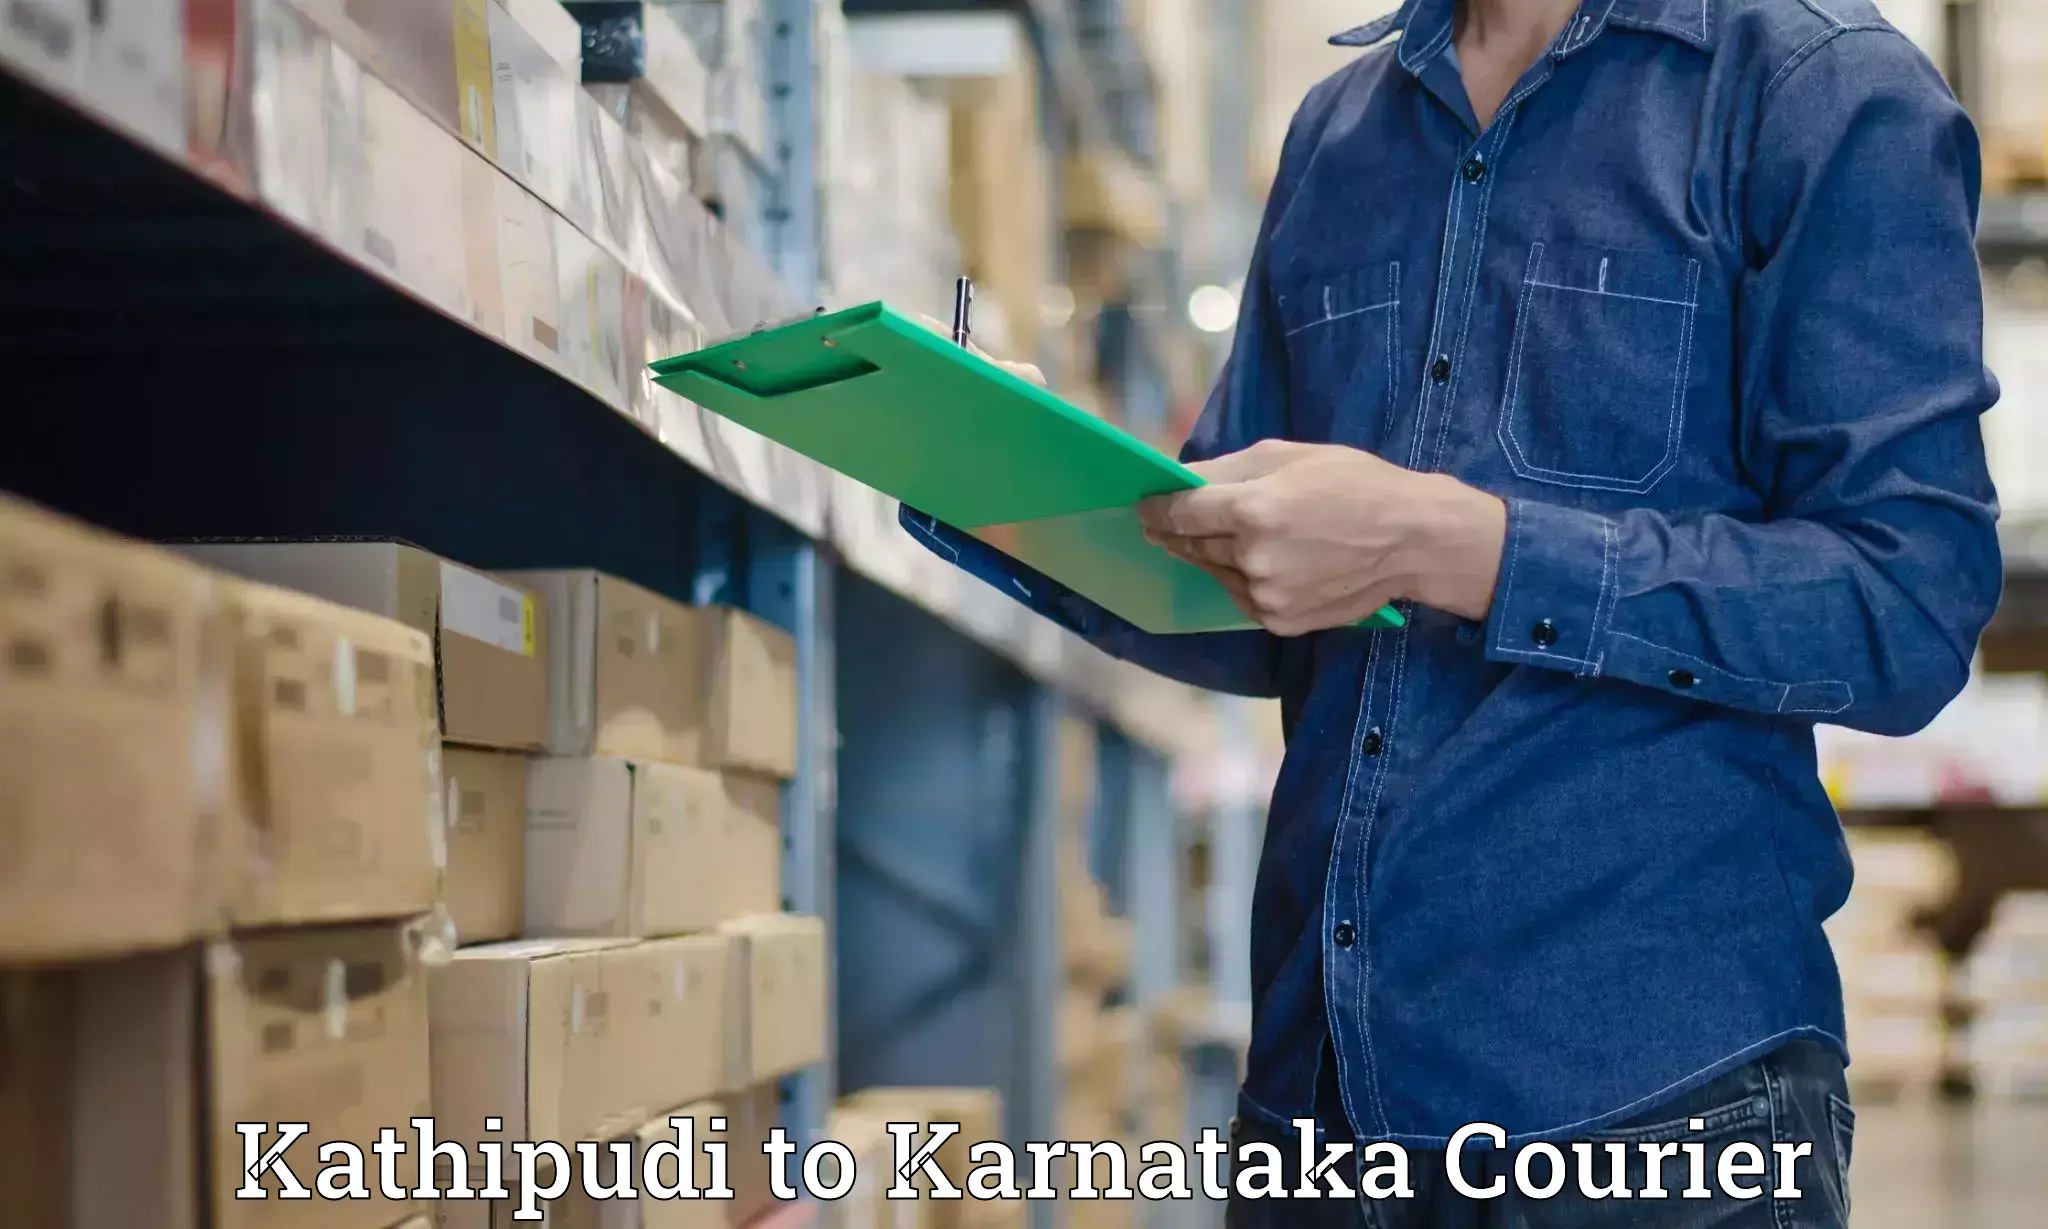 Weekend courier service Kathipudi to Kanjarakatte